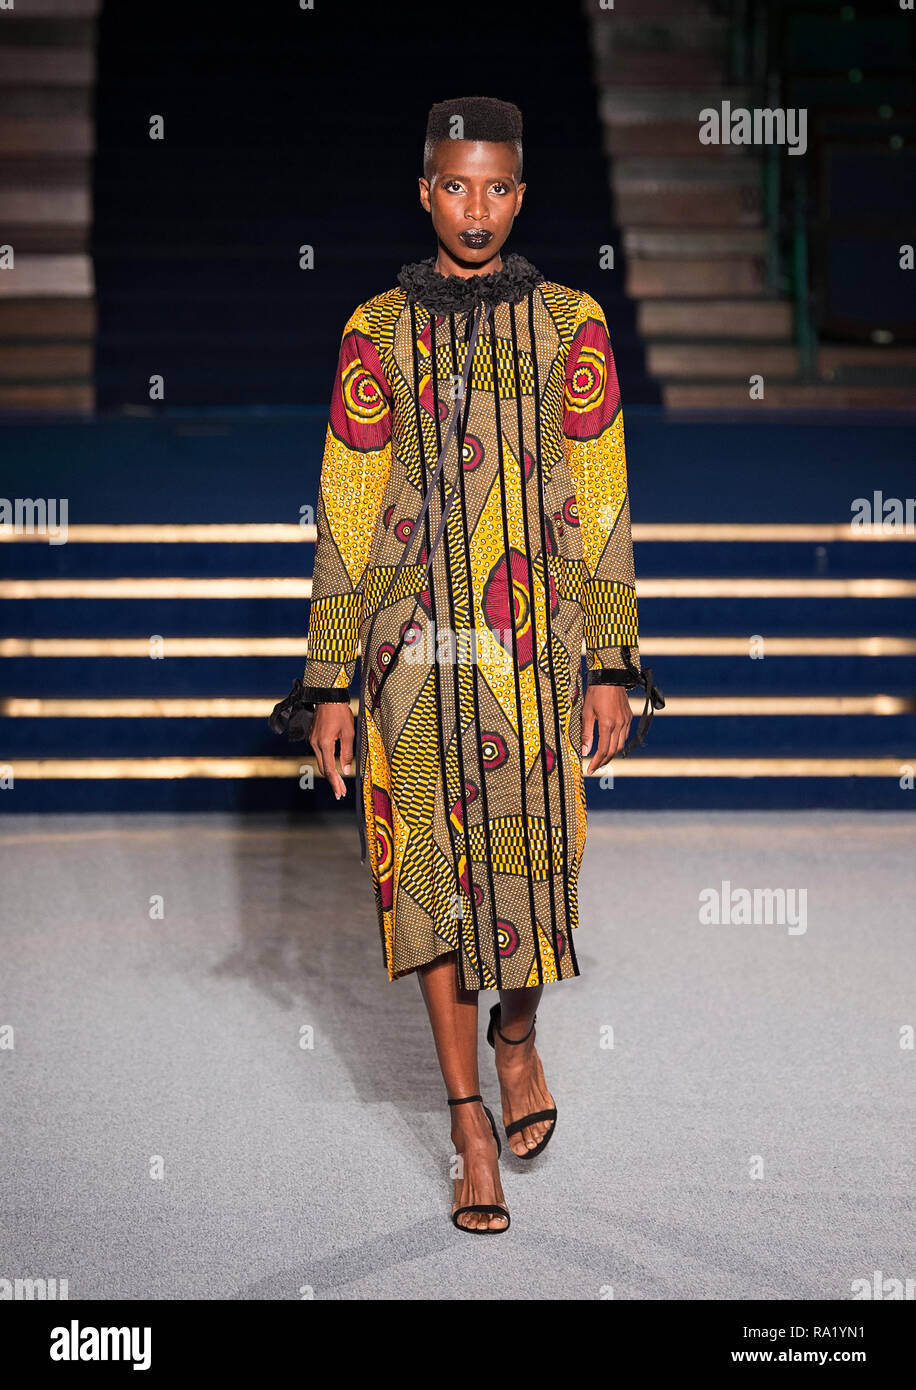 Africa Fashion Show 2018. Modello immagini prese dalla fossa della pressa dal fotografo Steve Mack per AfricanHair.com Foto Stock